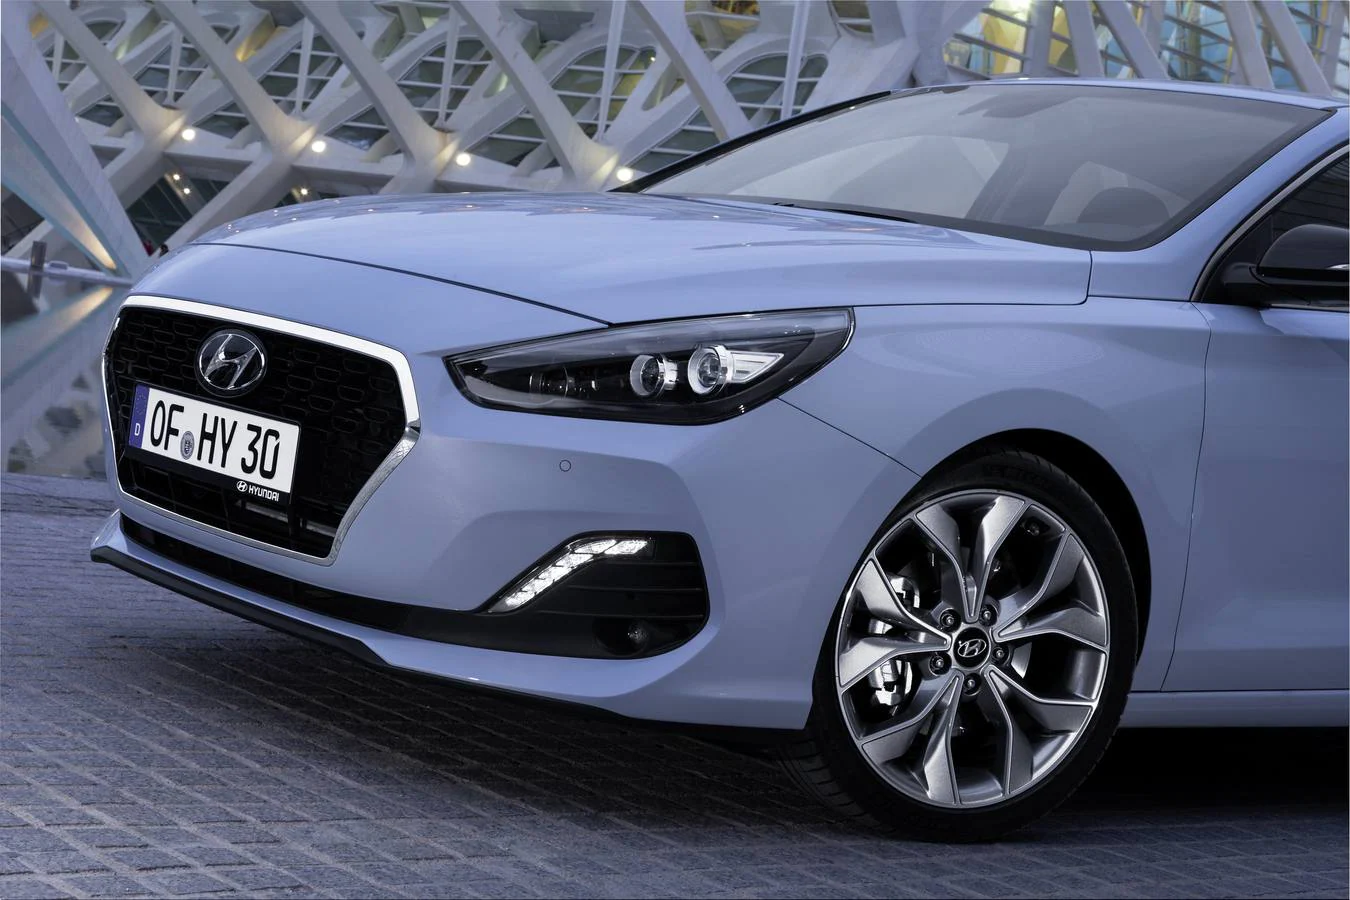 Hyundai añade a la gama i30 la versión Fastback, una versión más larga que se caracteriza por el nuevo diseño de la parte posterior. Se vende con la posibilidad de dos motores de gasolina, a partir de 16.165 euros.